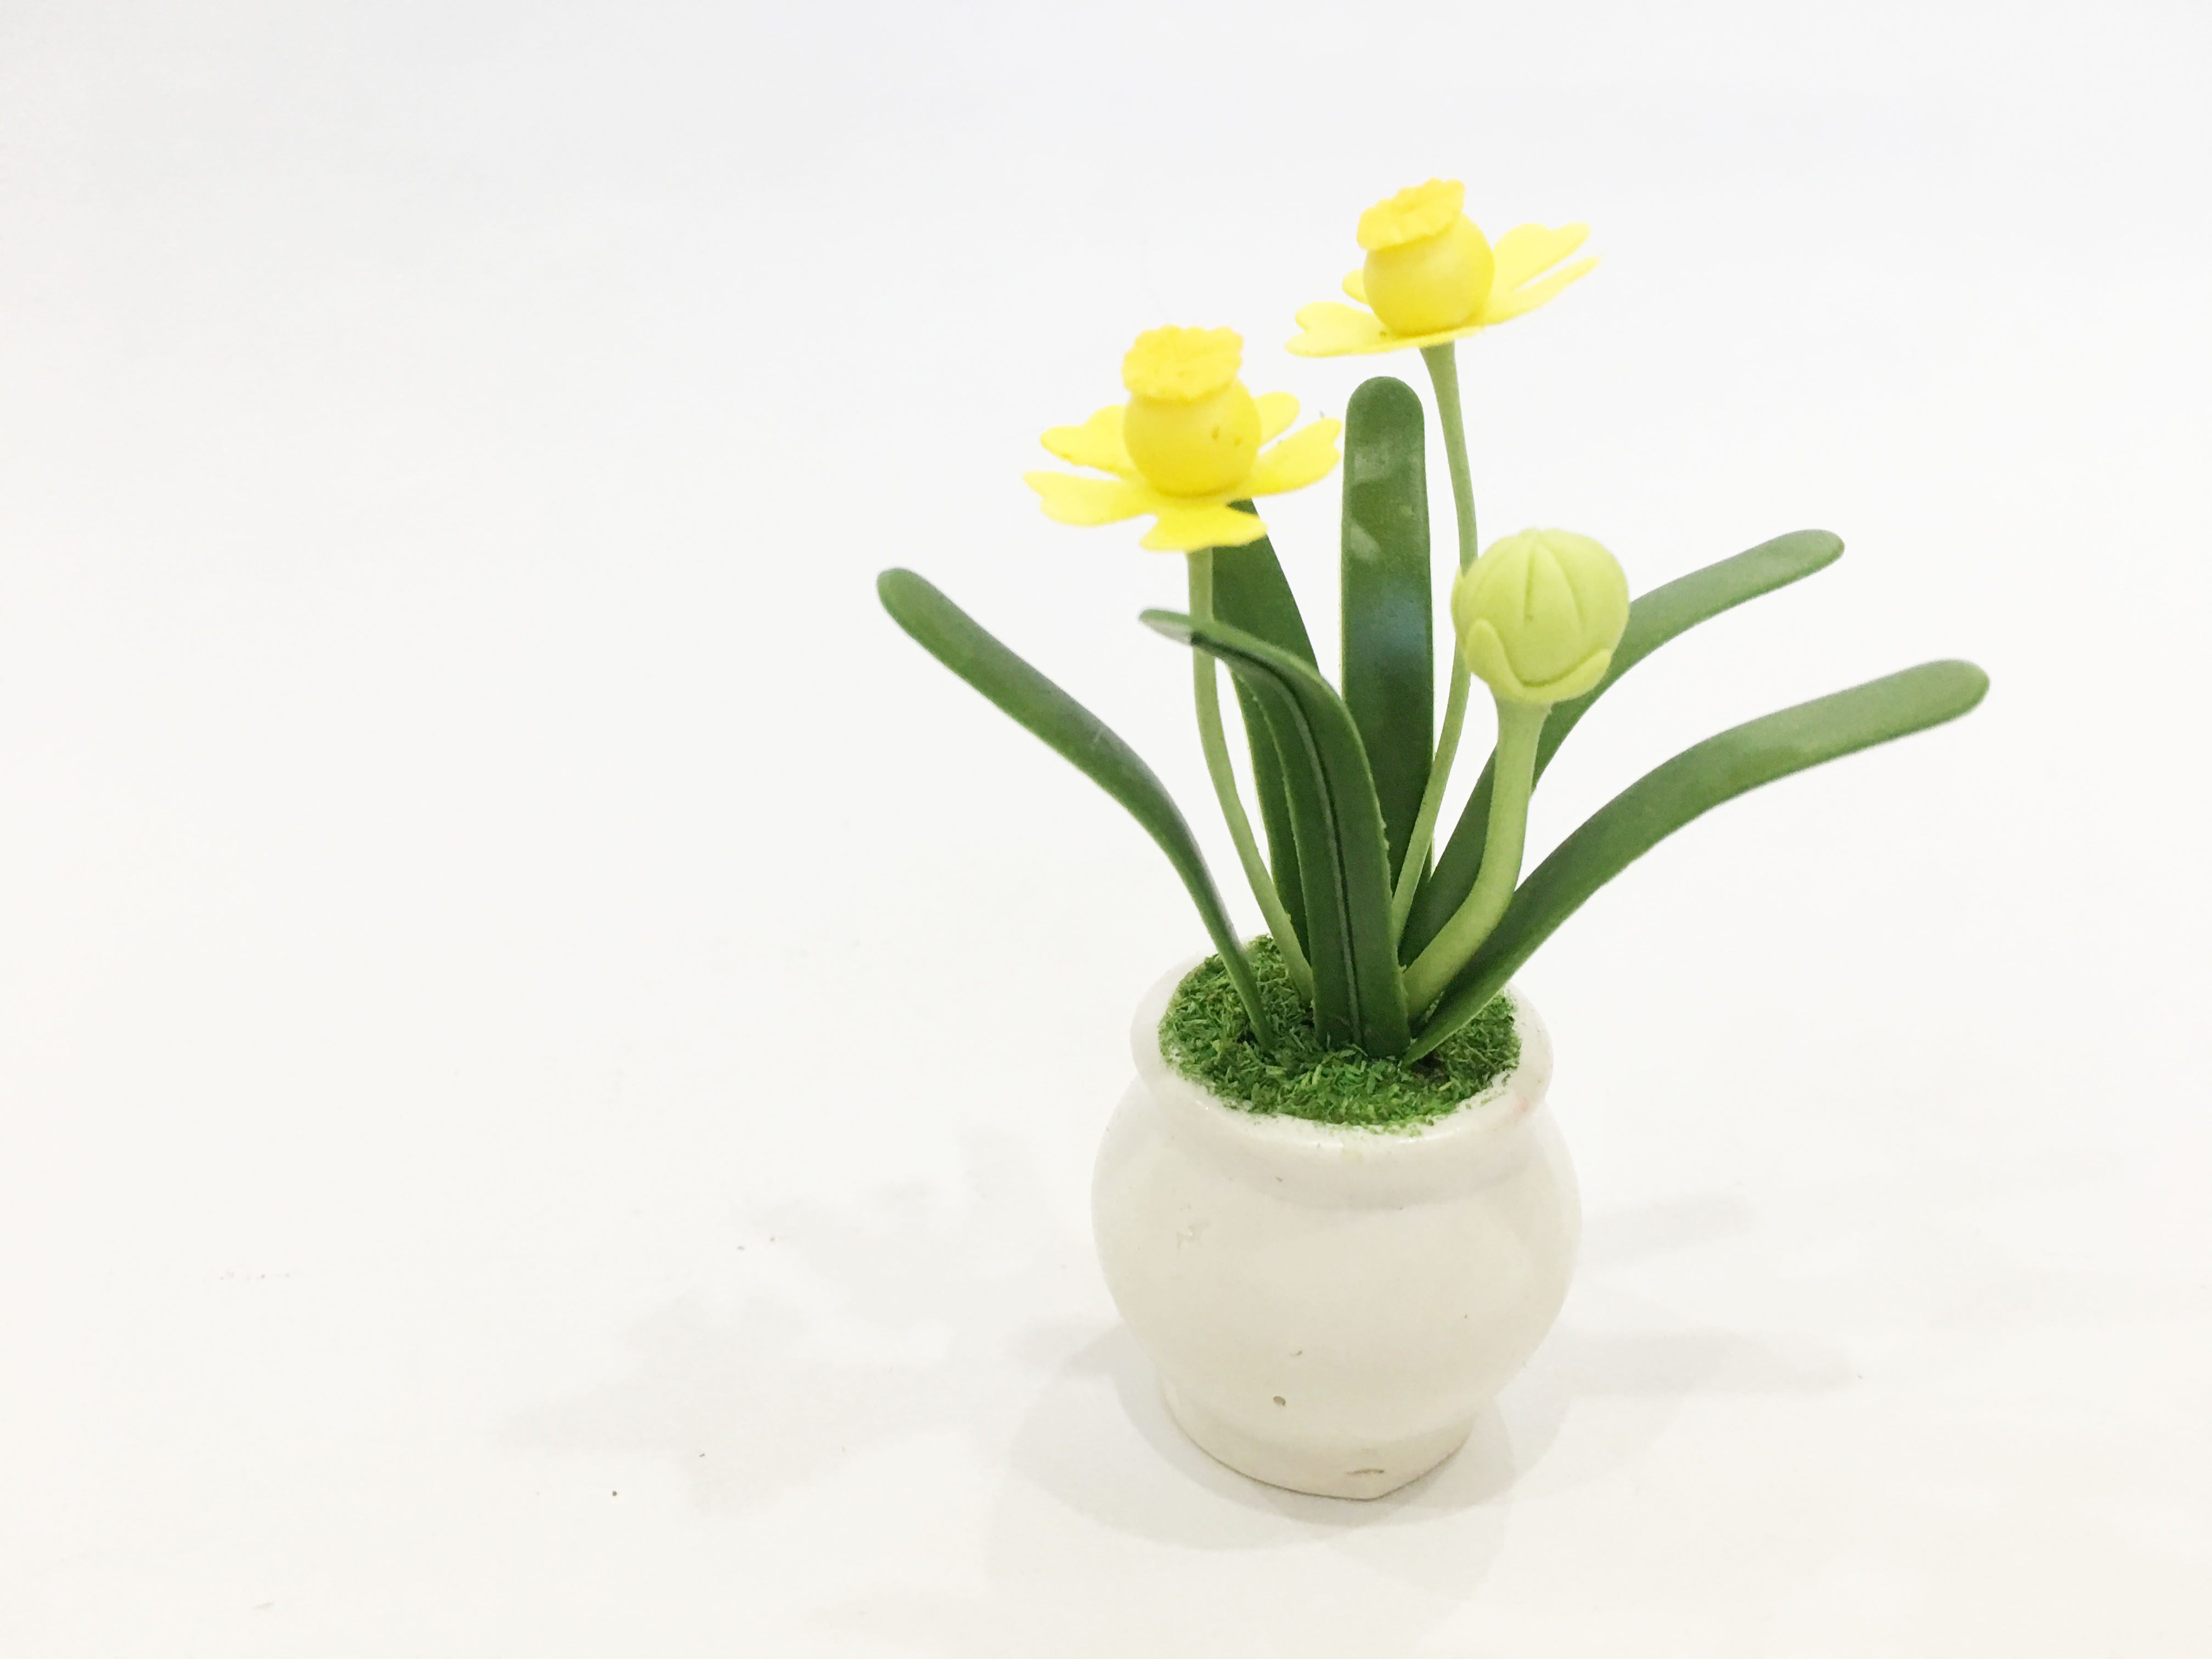 Chậu hoa đất sét mini - Cây hoa thủy tiên / Daffodil (phát màu ngẫu nhiên) - Quà tặng trang trí handmade